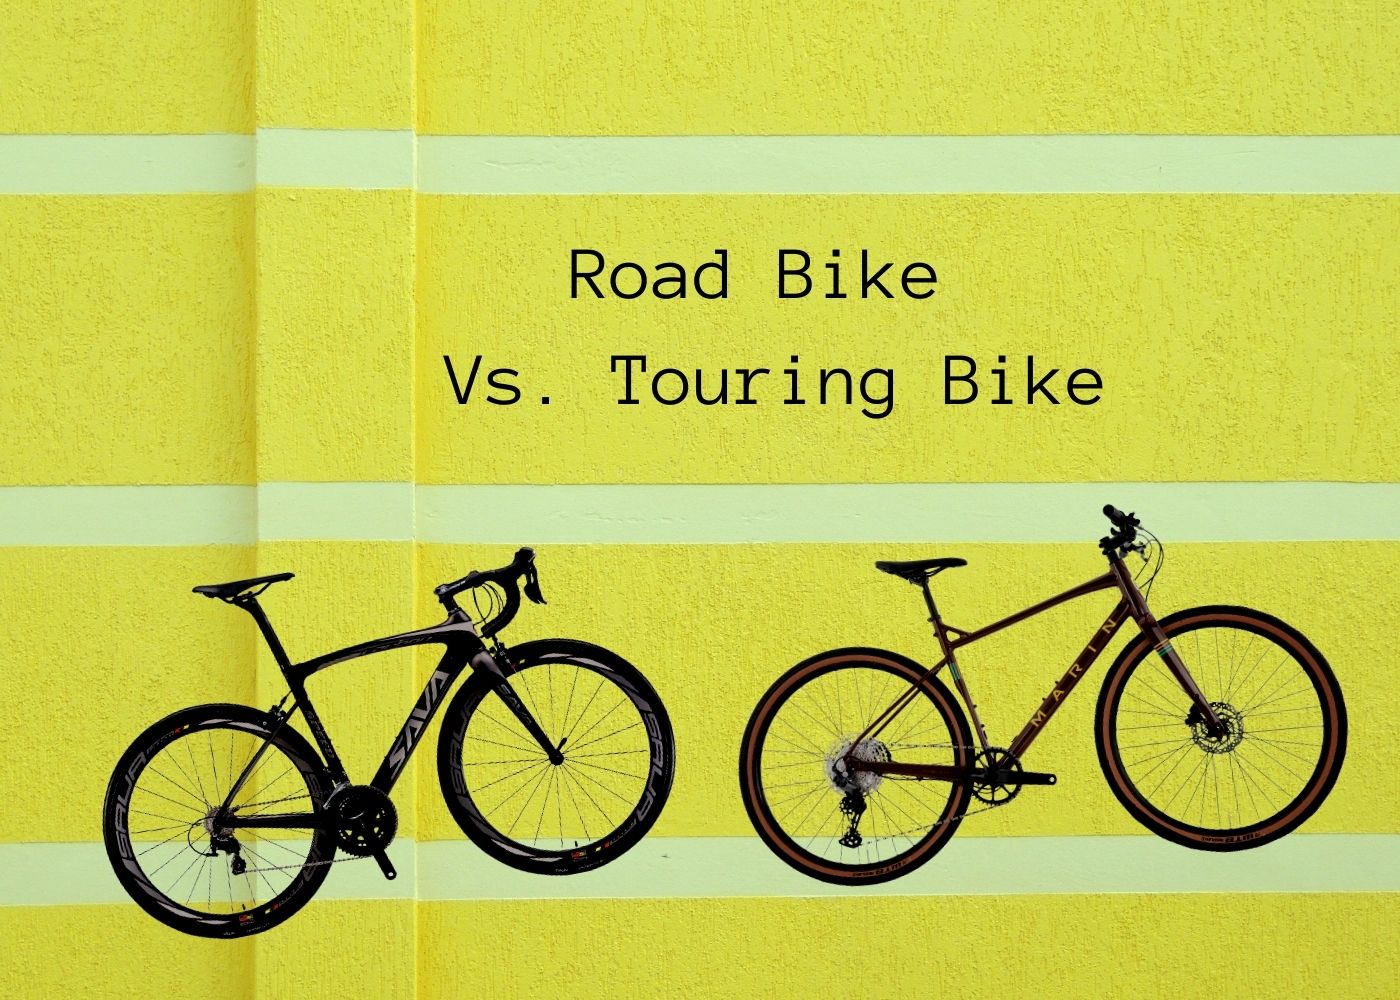 road bike and touring bike compared